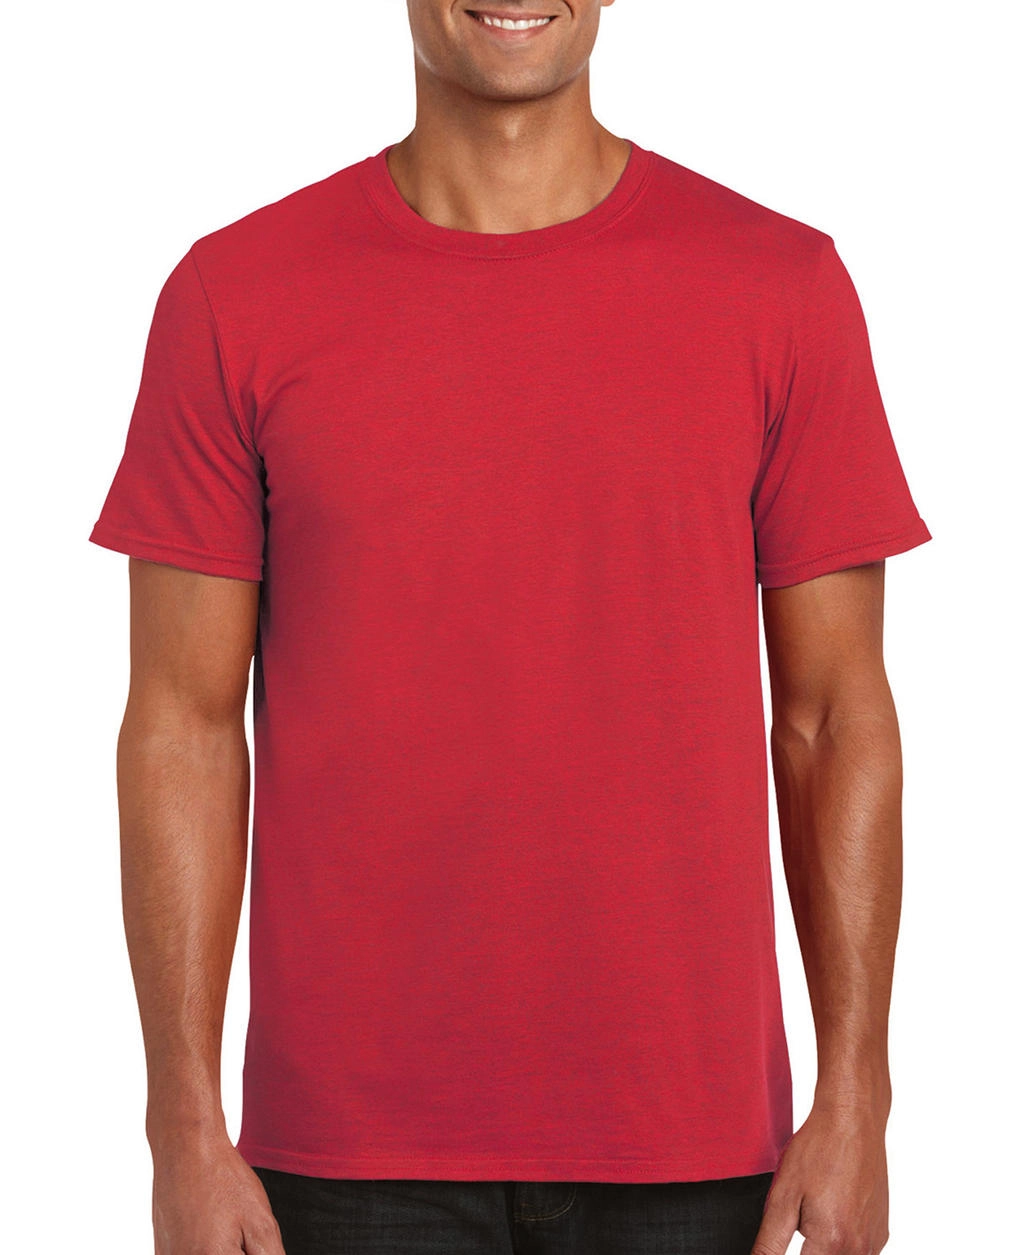 Softstyle® Ring Spun T-Shirt zum Besticken und Bedrucken in der Farbe Heather Red mit Ihren Logo, Schriftzug oder Motiv.